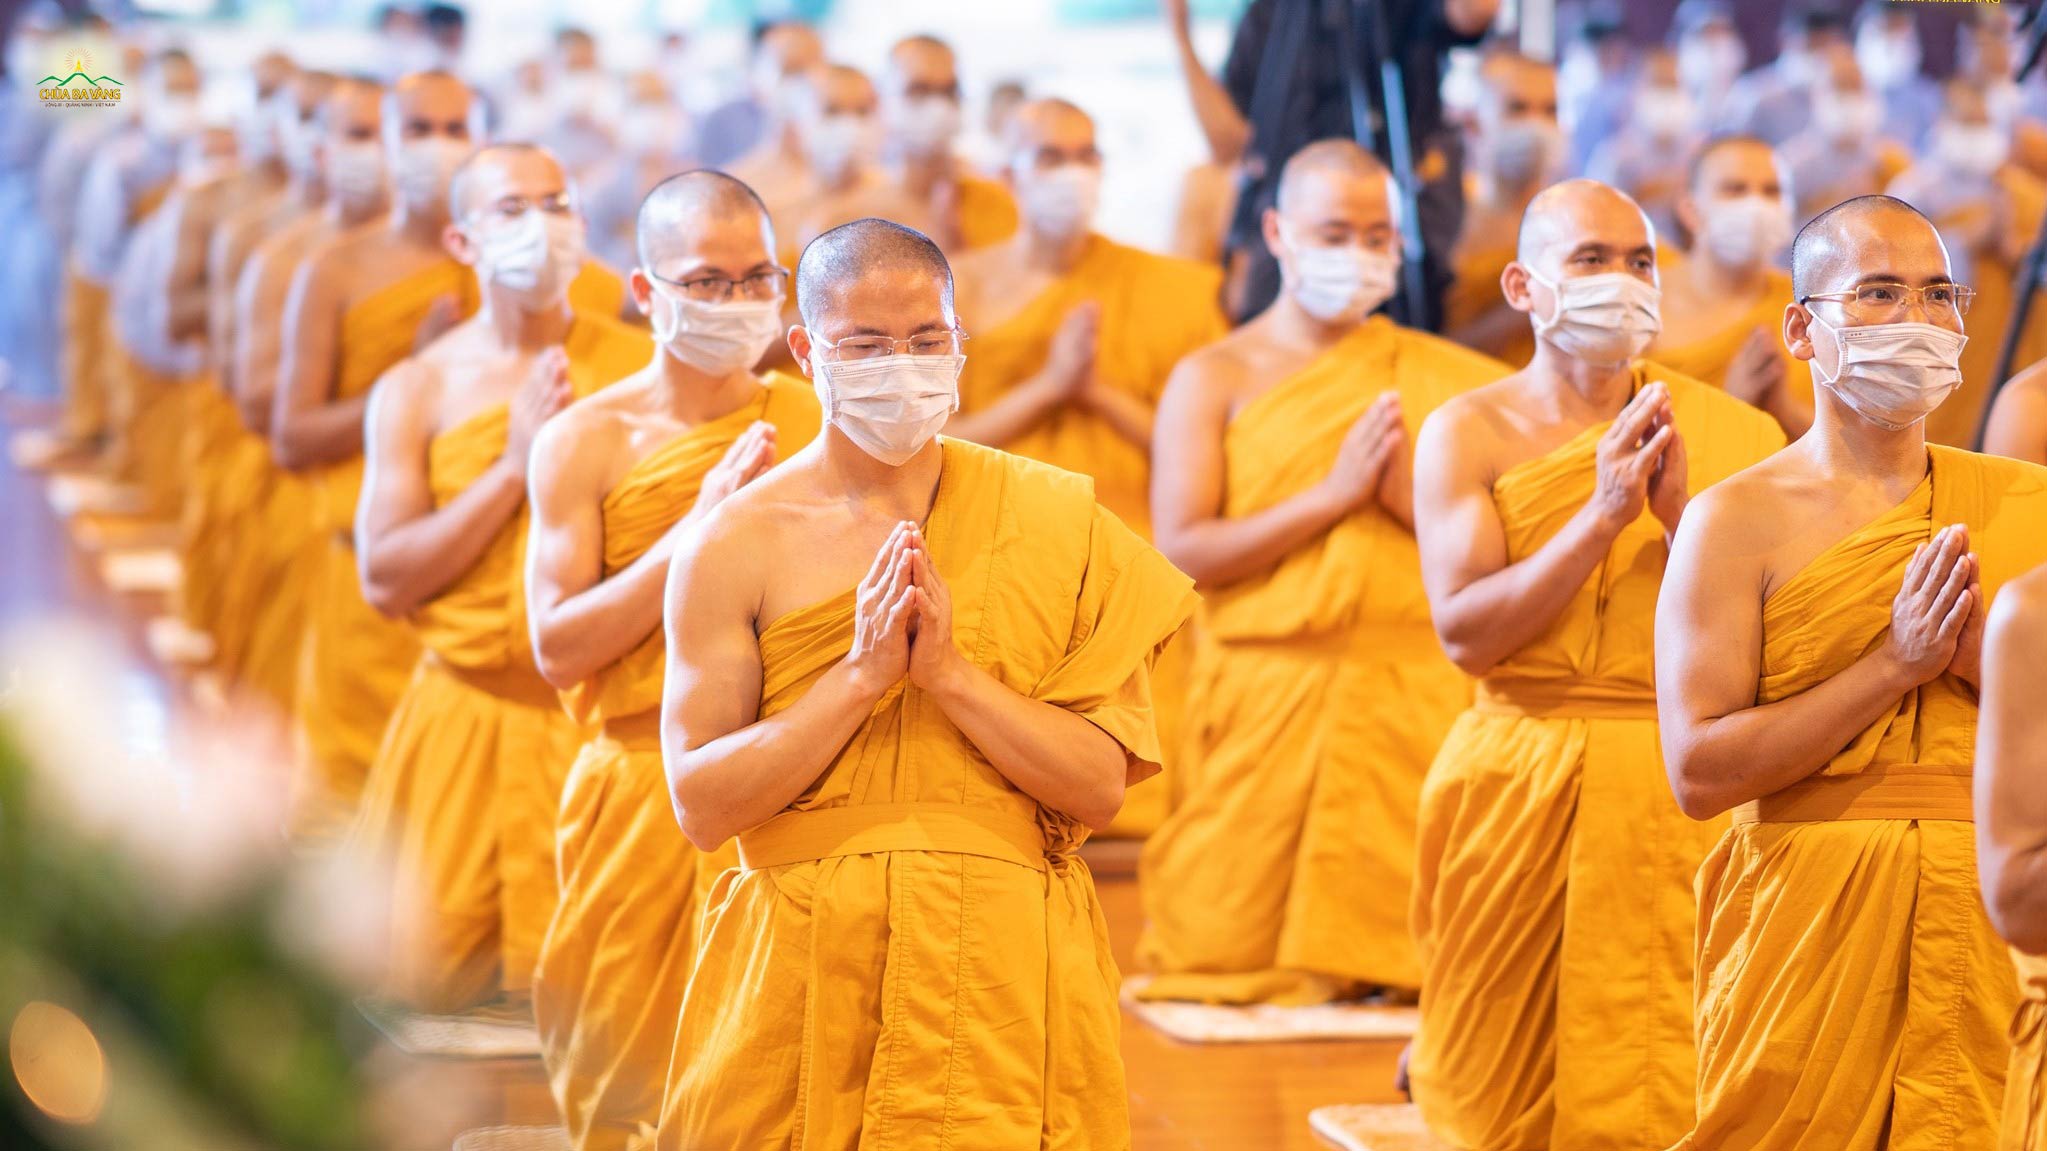 Hướng về Sư Phụ, tứ chúng đã dũng mãnh phát nguyện Bồ đề, để vững bước trên con đường tầm cầu Phật quả